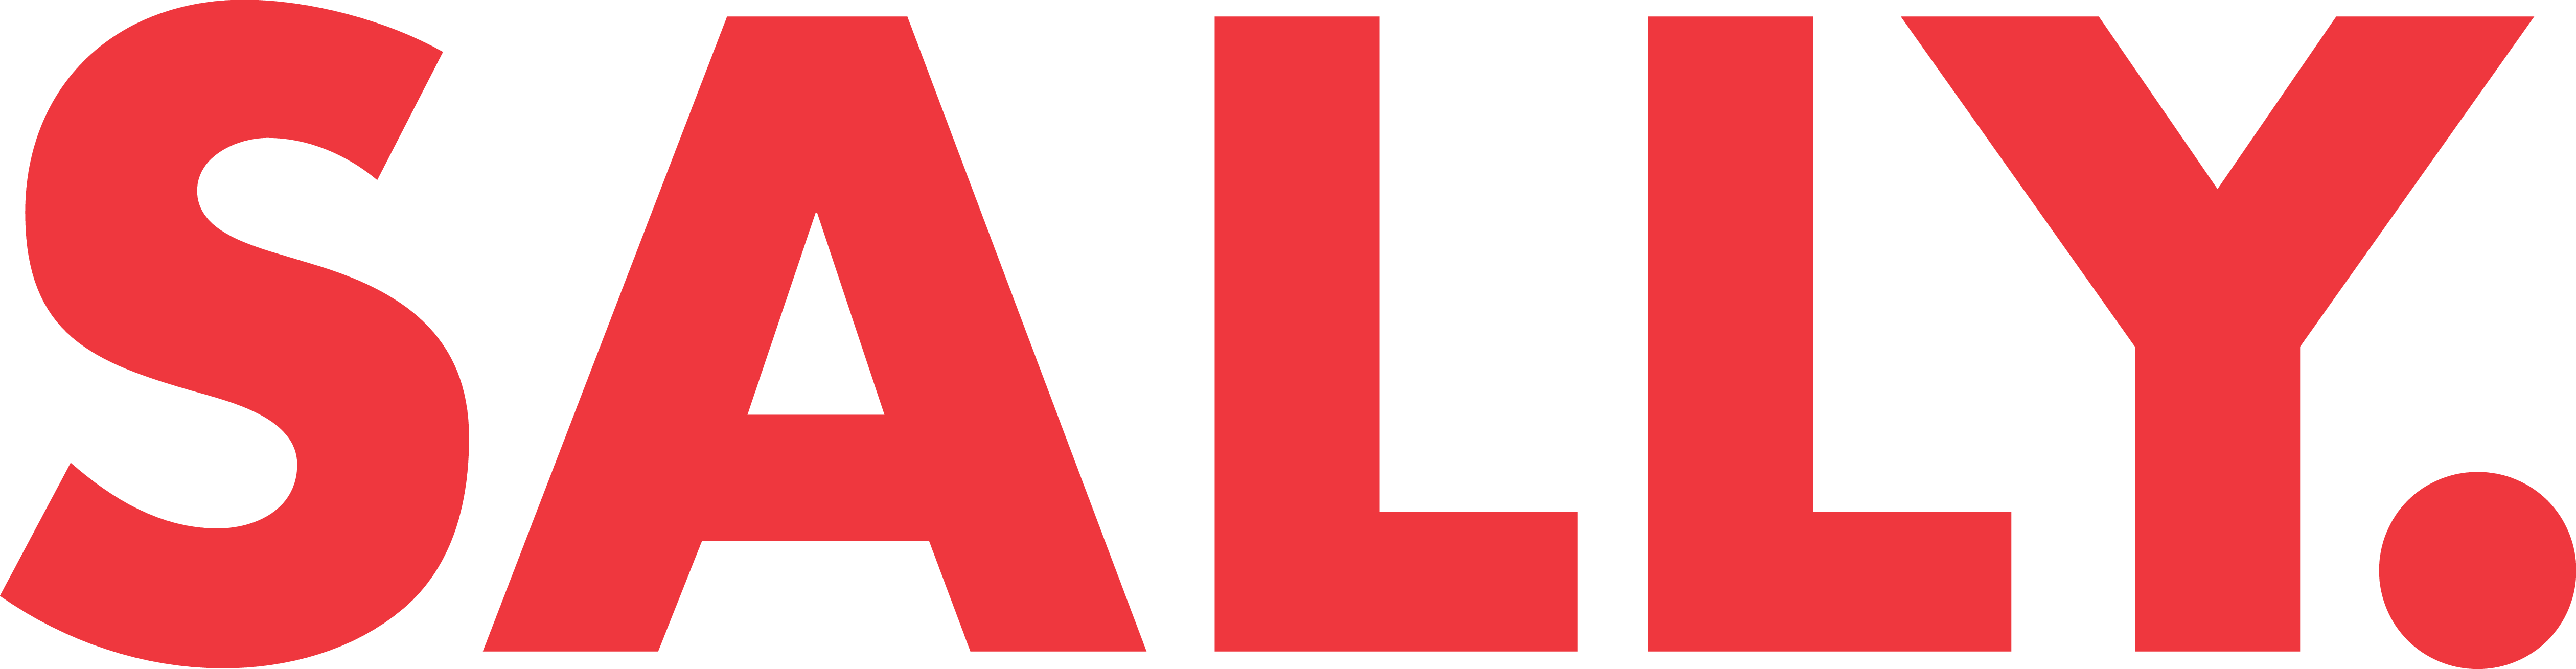 Sally_Dot_Logo